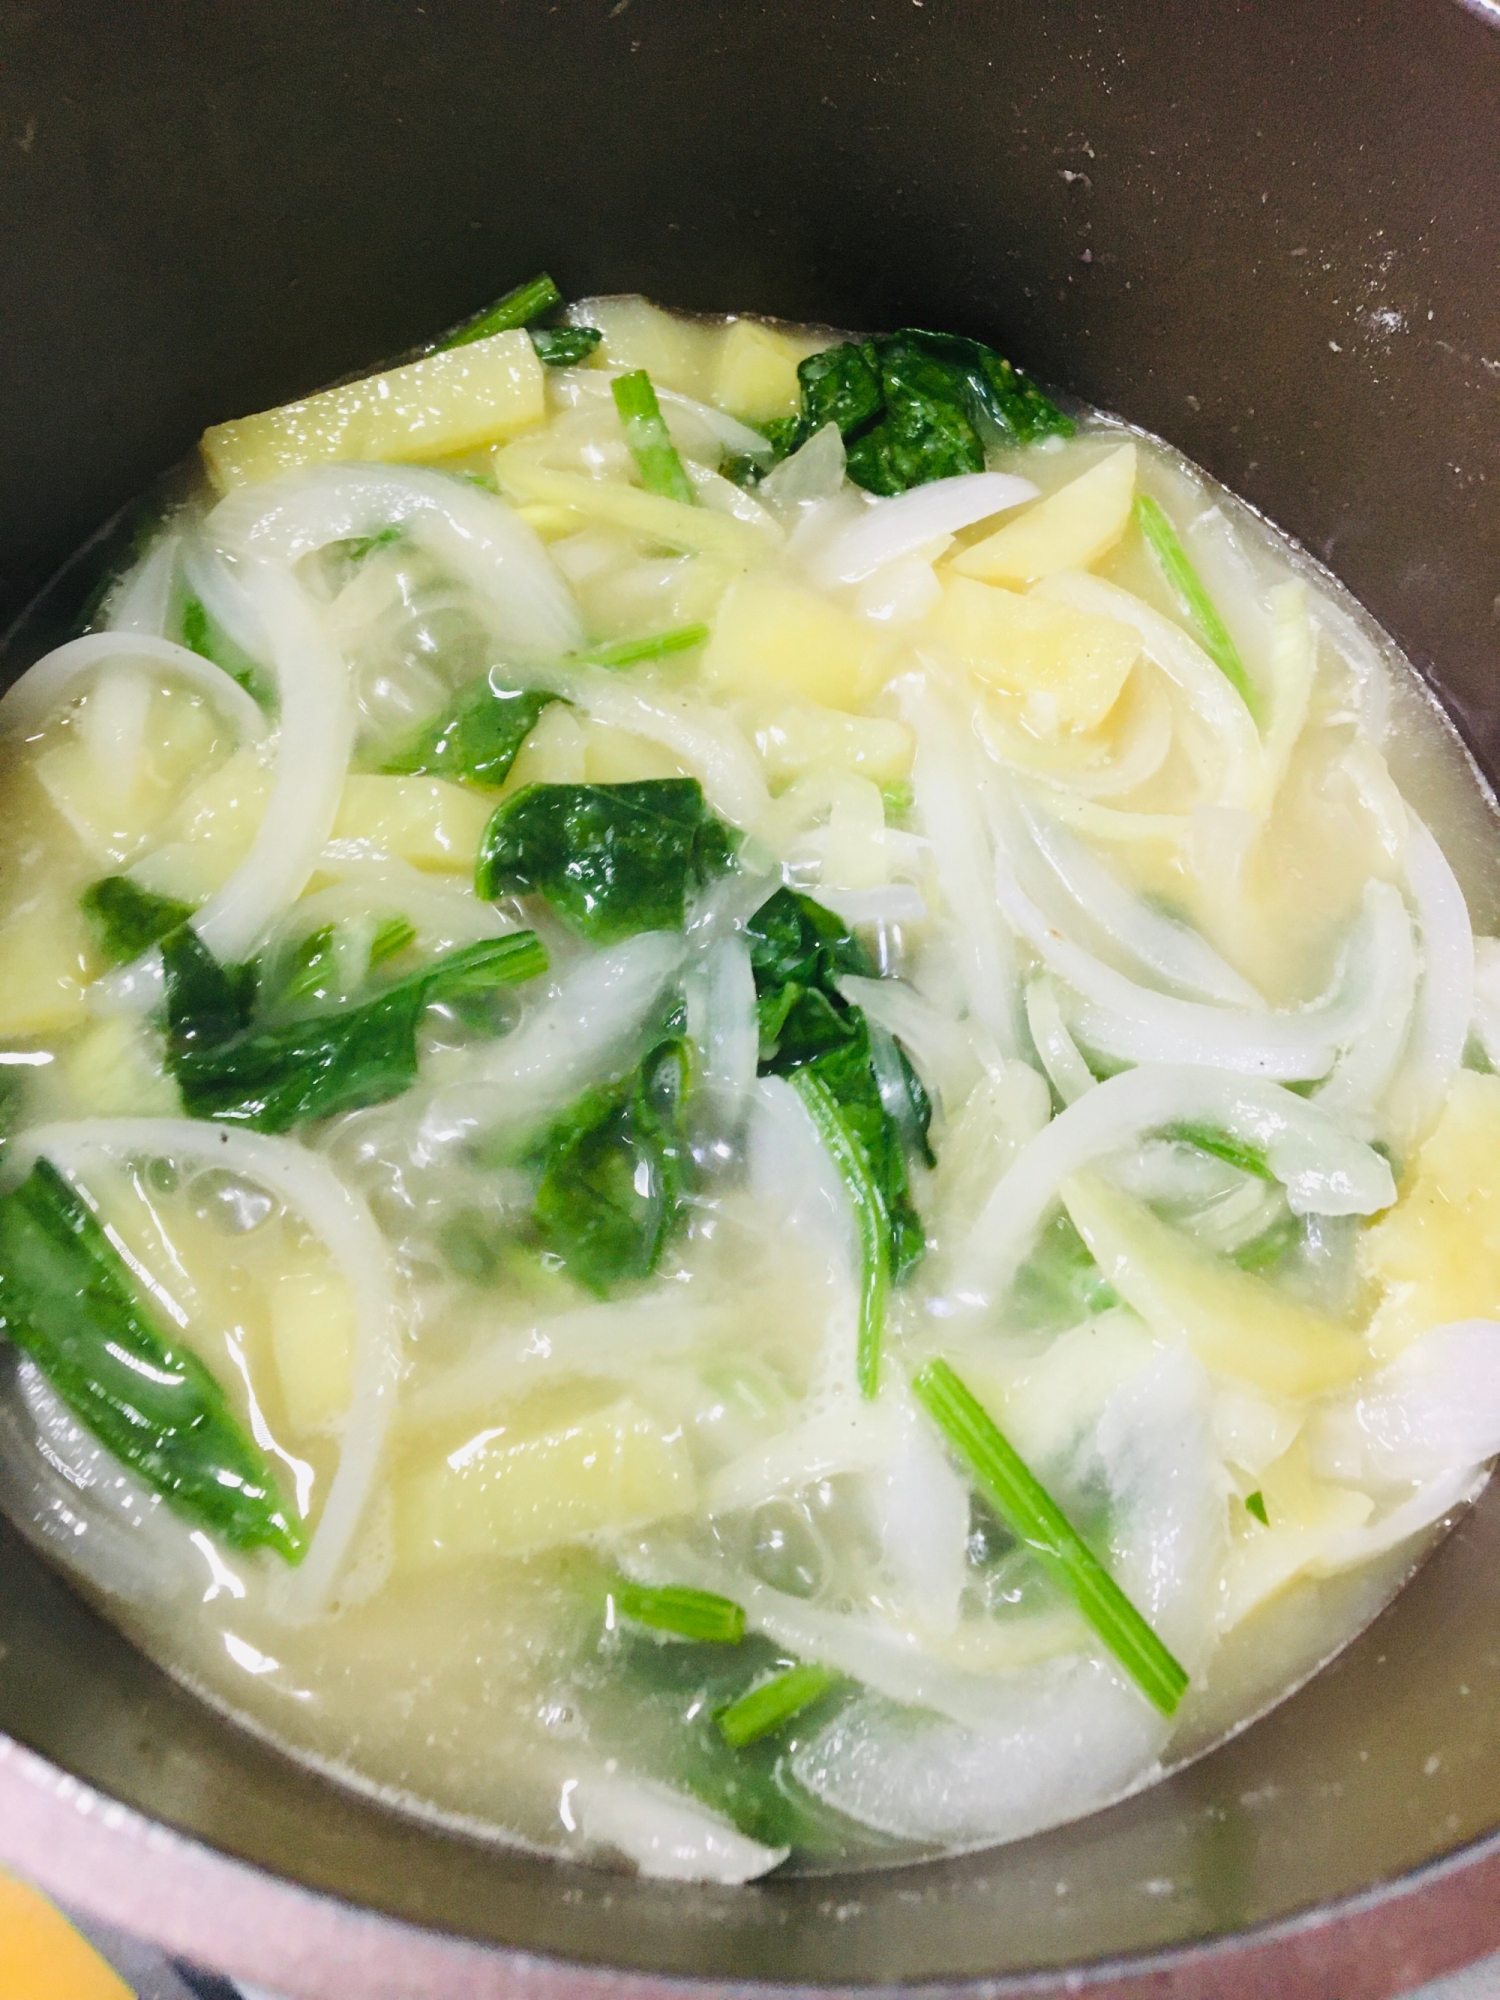 青梗菜と玉ねぎの中華スープ